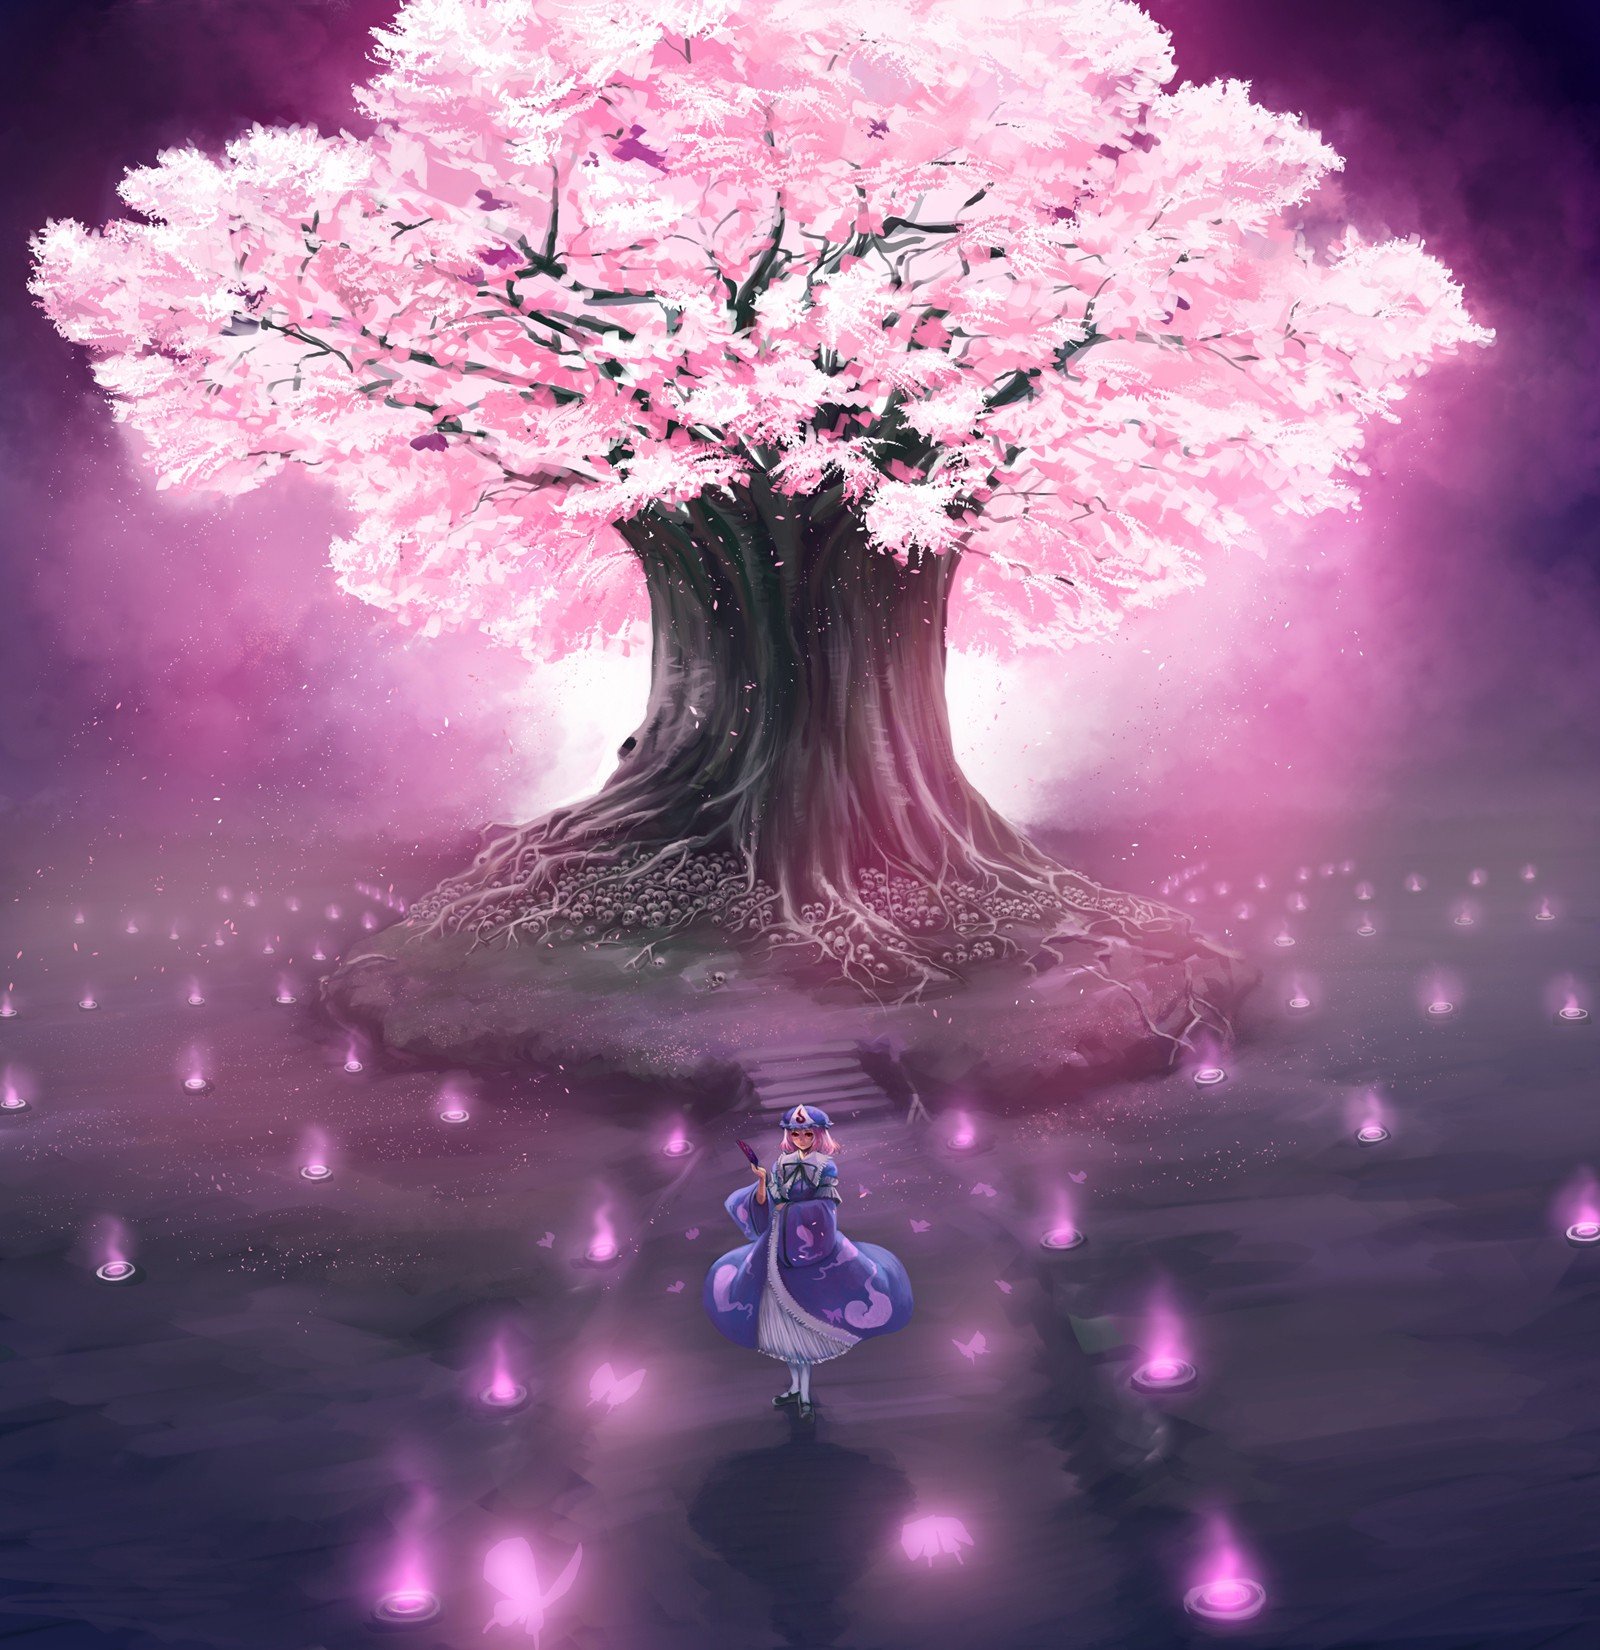 Download Mobile Wallpaper Anime, Girls, Sakura For - Anime Cherry Blossom  Tree - 700x721 Wallpaper 